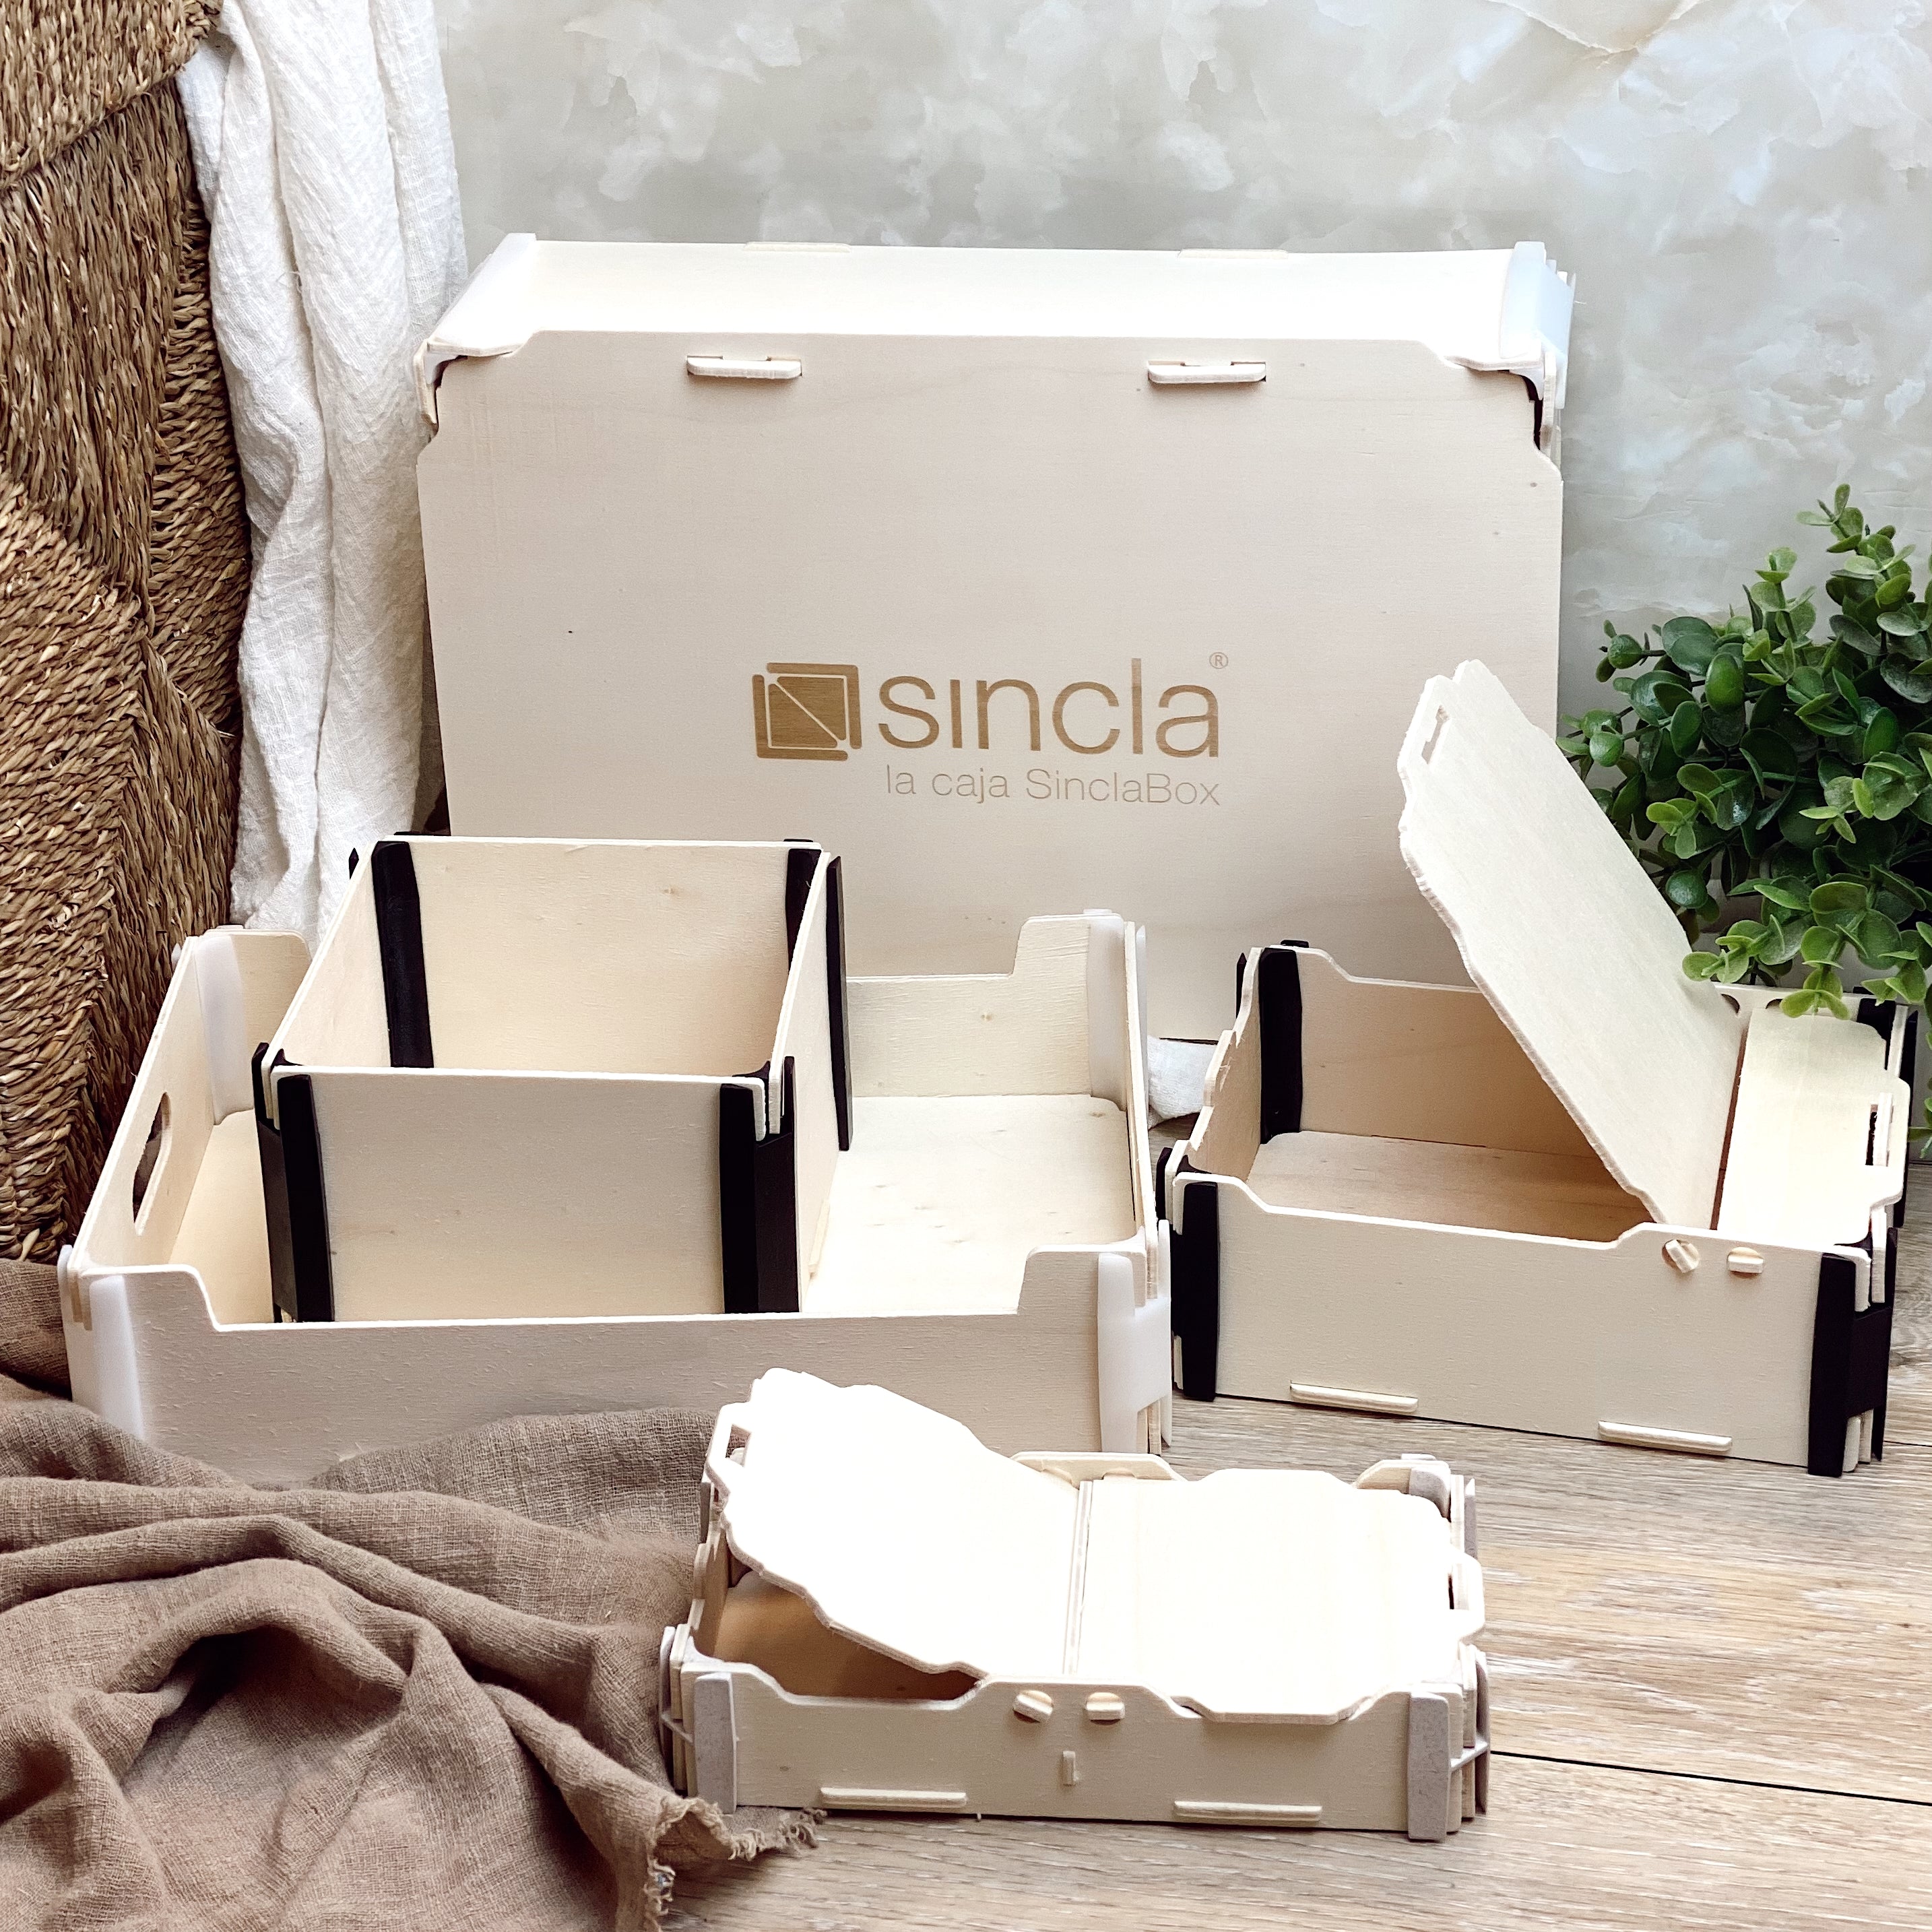 ¿Cómo personalizar cajas? – Cómo lo hacemos en Sincla